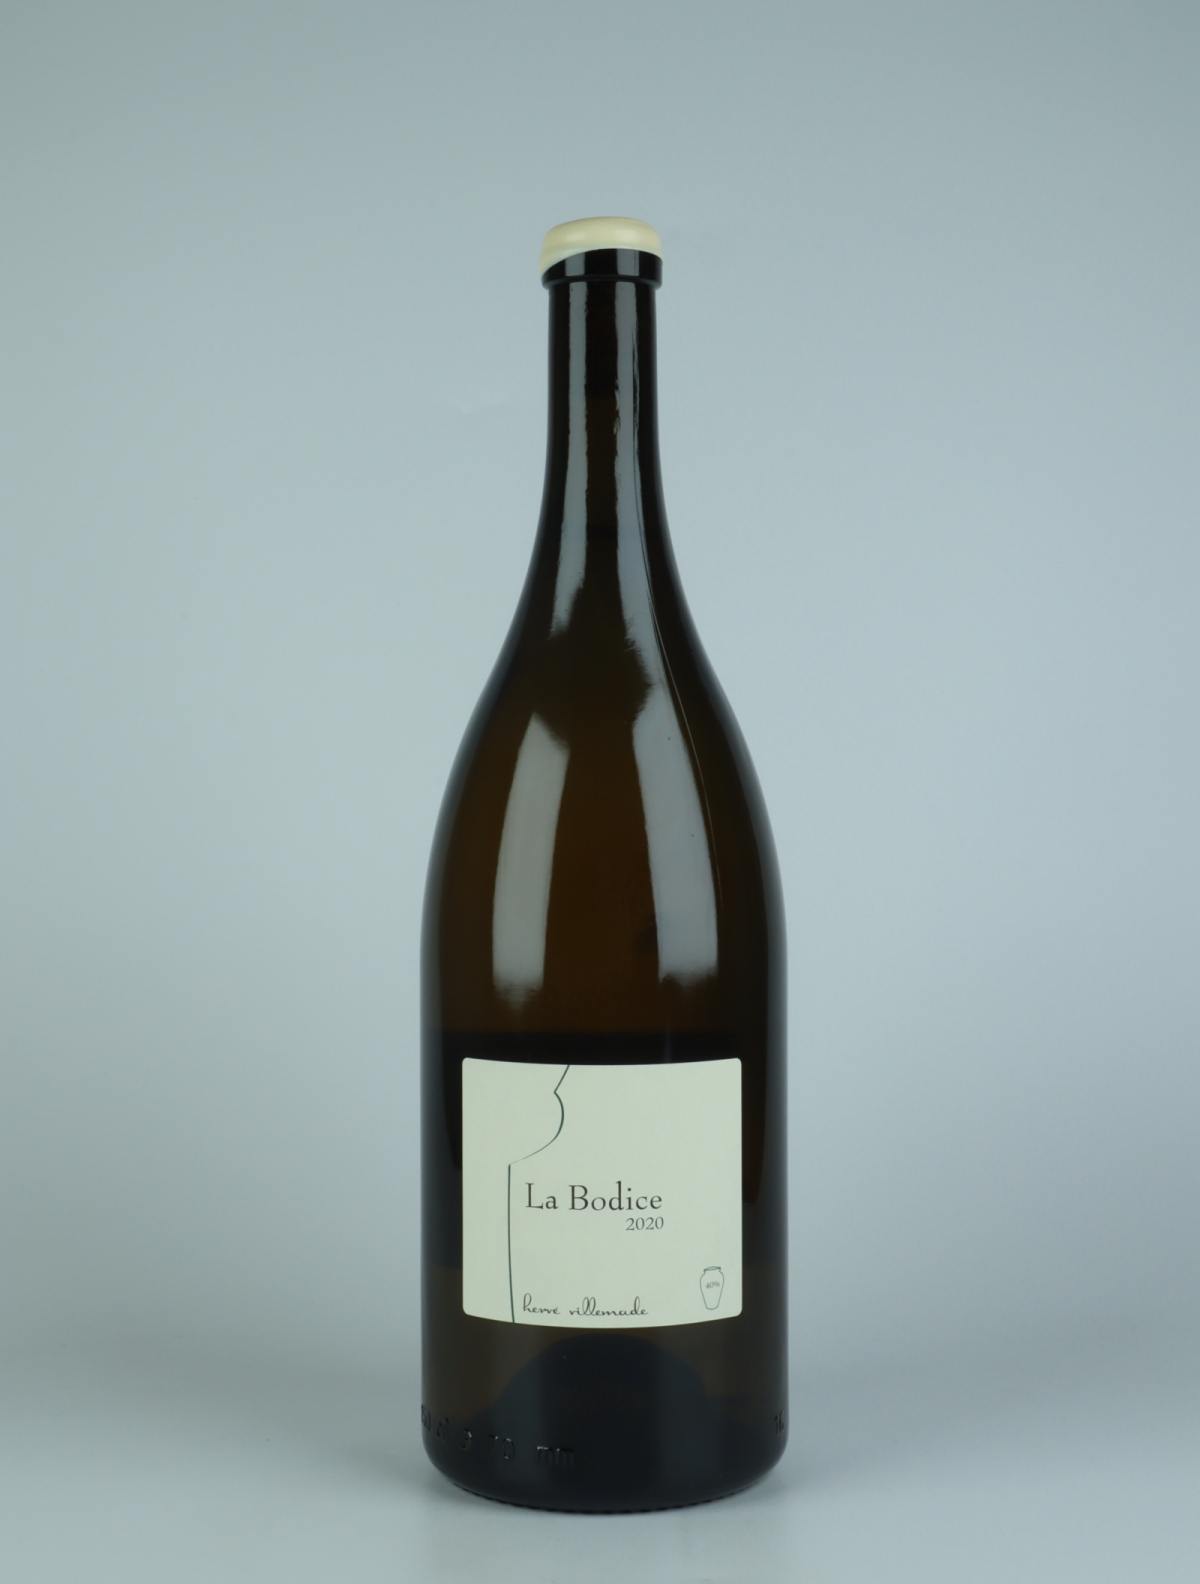 En flaske 2020 Cheverny Blanc - La Bodice Hvidvin fra Hervé Villemade, Loire i Frankrig